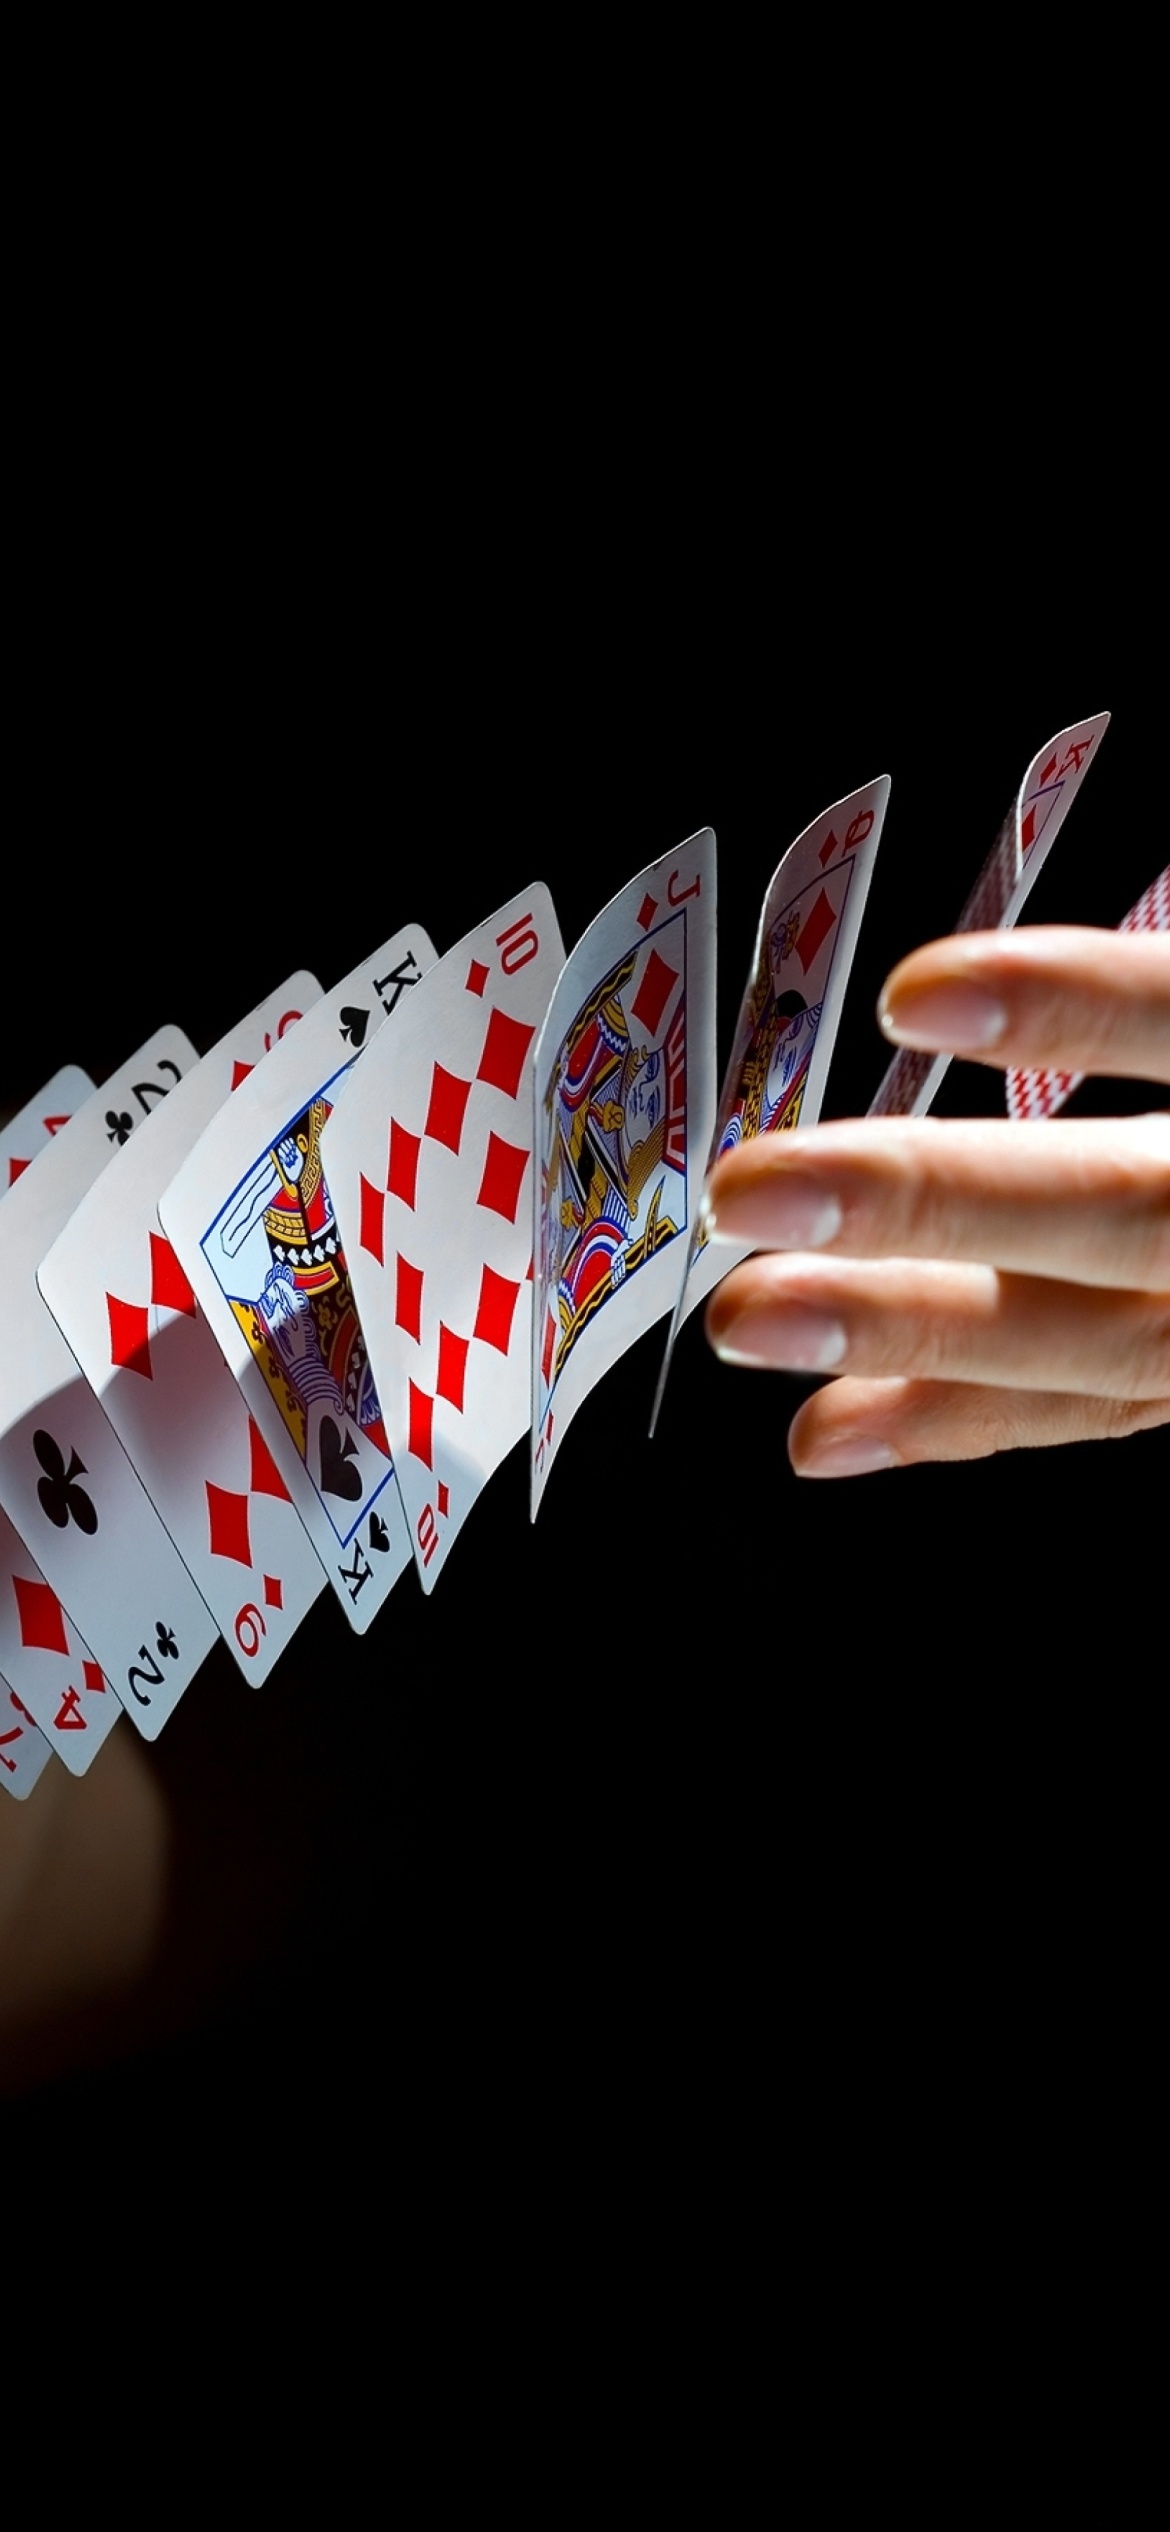 Обои Playing cards trick 1170x2532